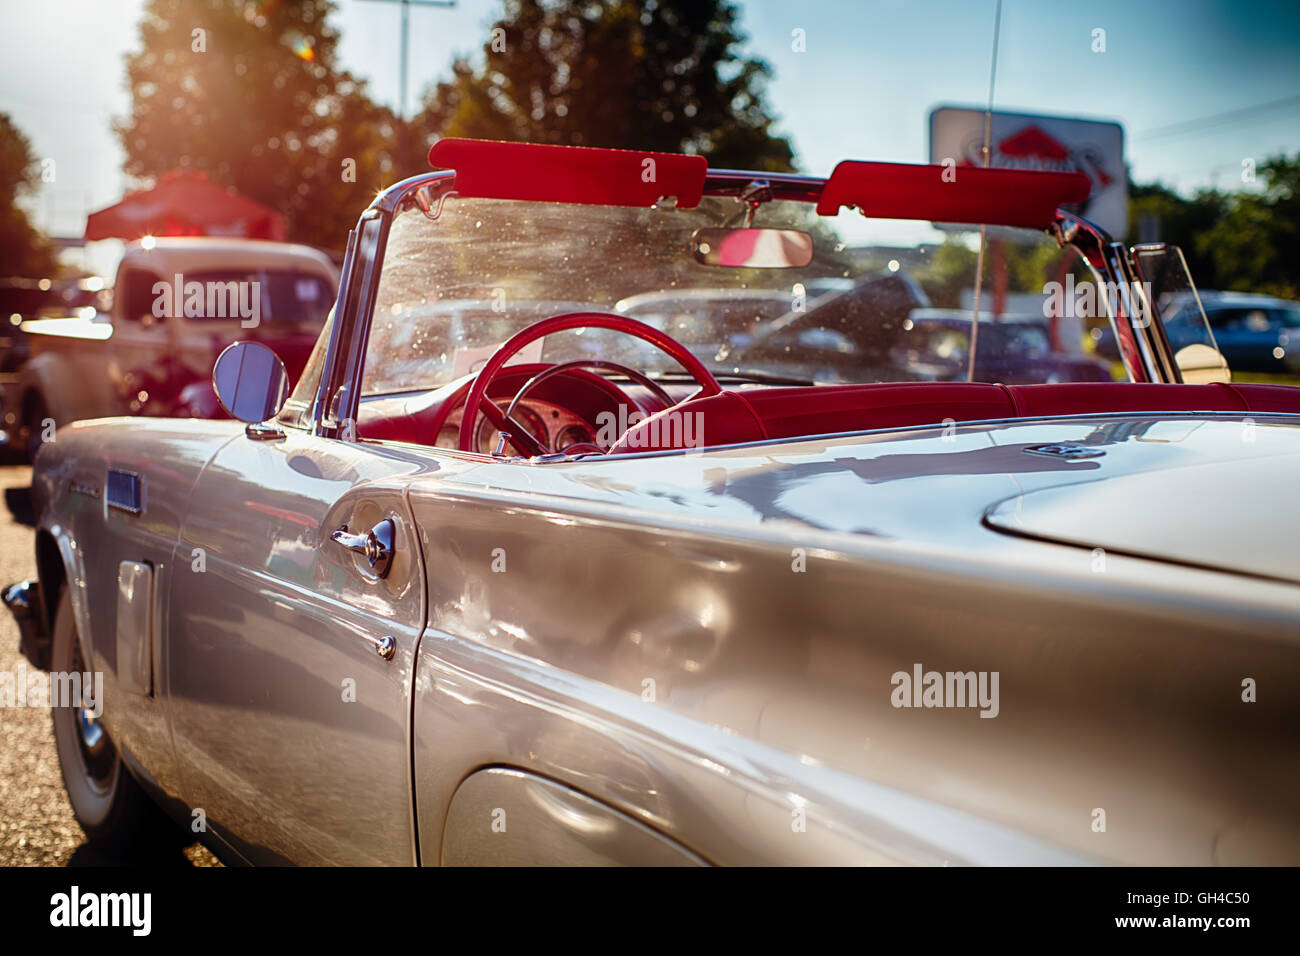 Basso Angolo di visione di un classico American convertibile in una trasmissione in parcheggio durante la calda estate nel pomeriggio, New Jersey, STATI UNITI D'AMERICA Foto Stock